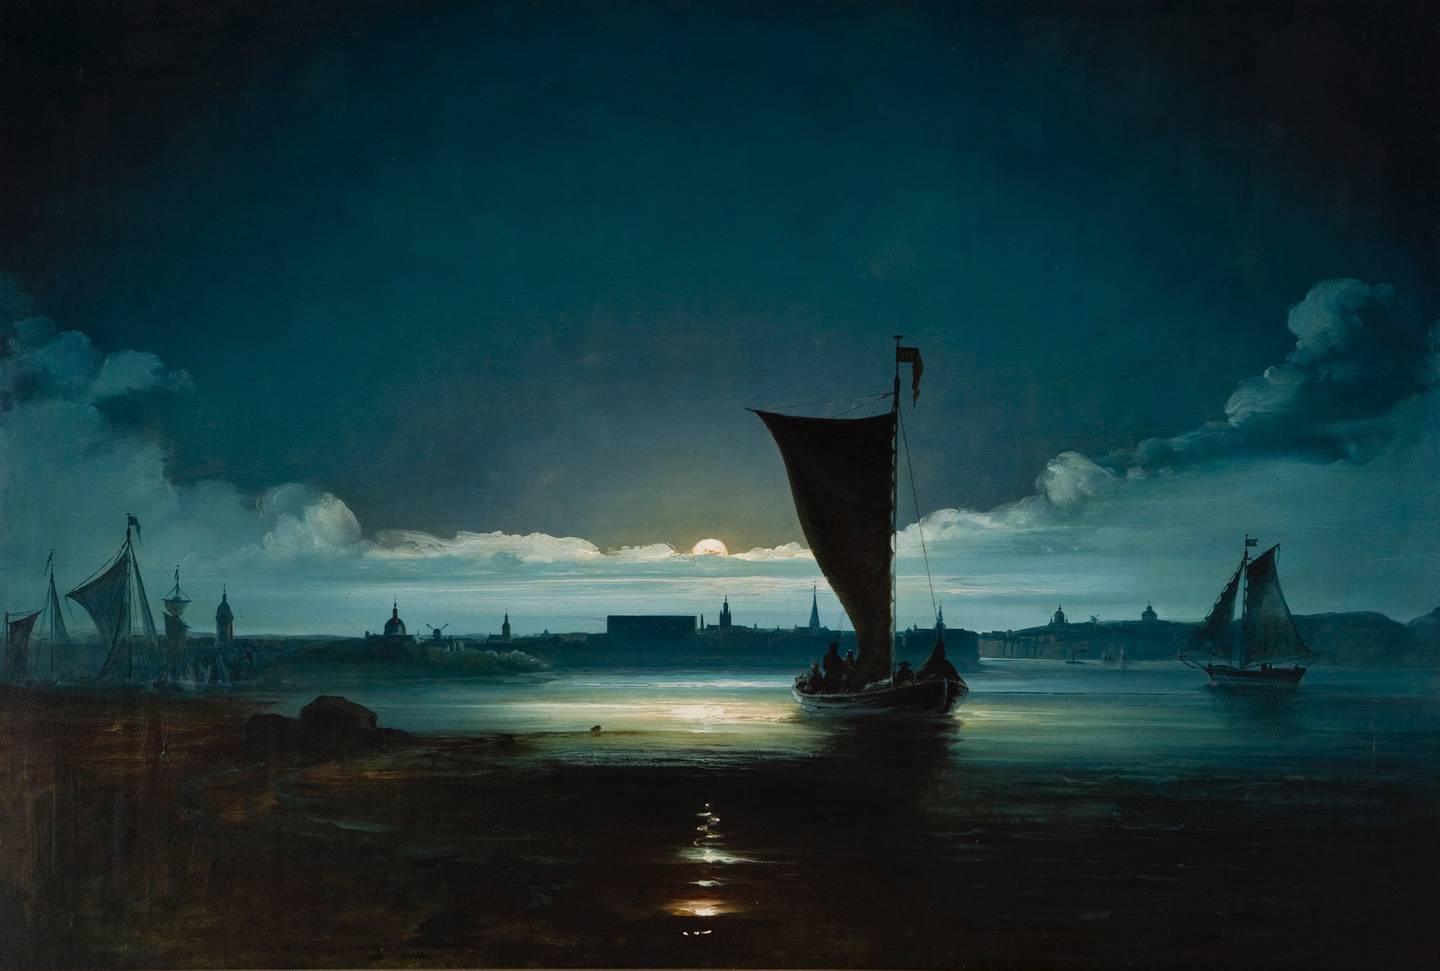 Peder Balkes bilder kan oppleves på Vestfossen, blant dem «Stockholm i måneskinn», The Gundersen Collection.